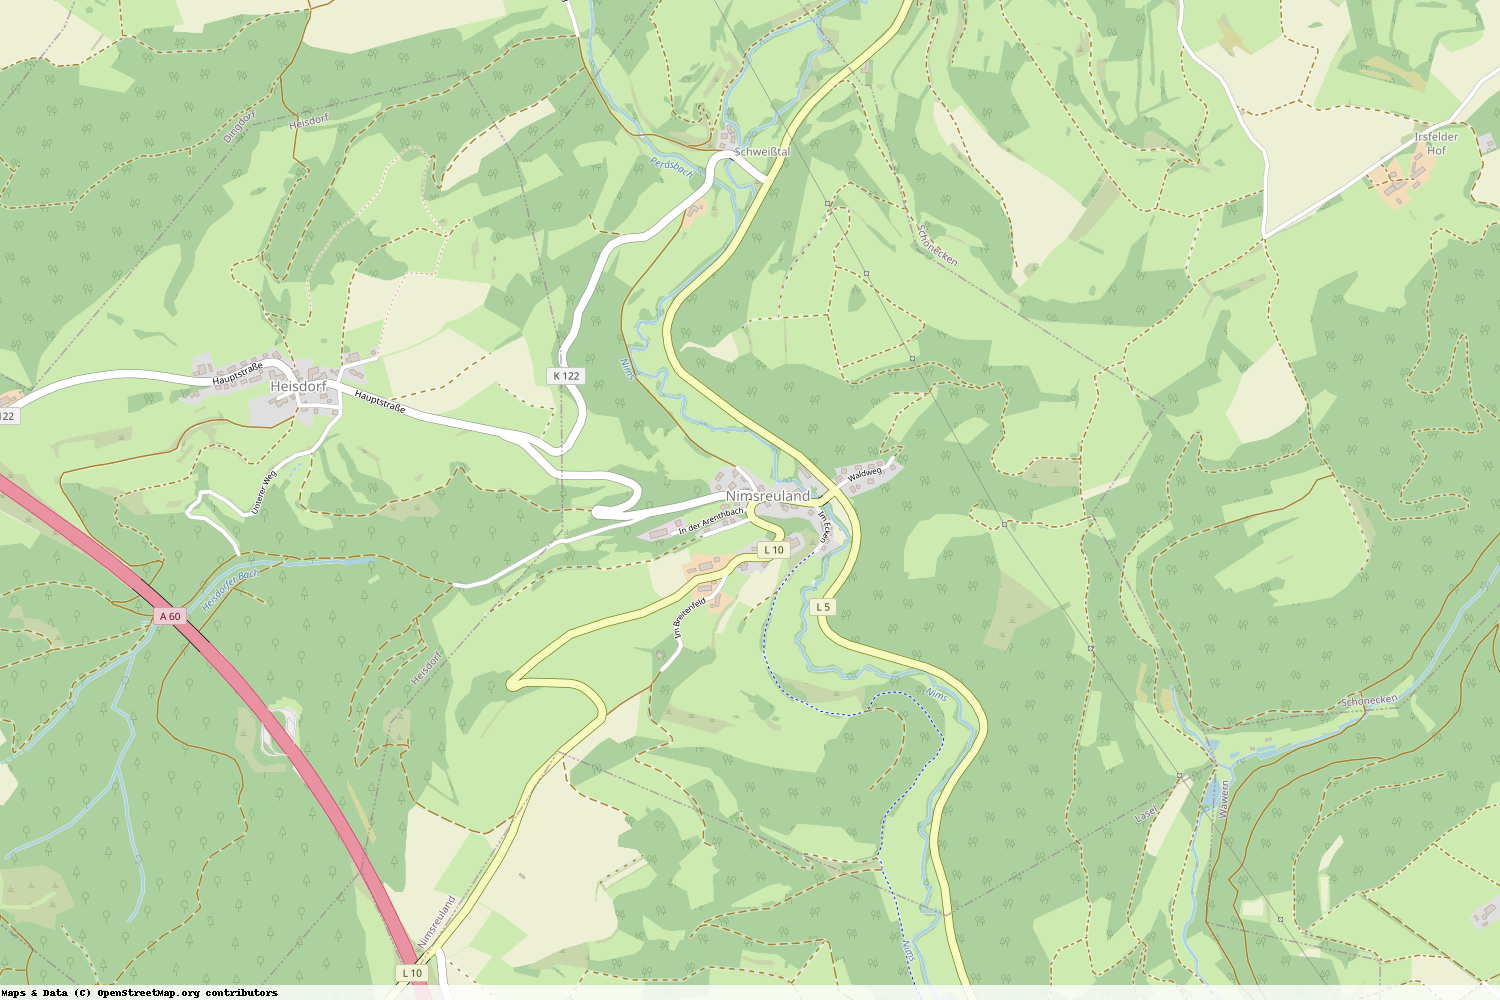 Ist gerade Stromausfall in Rheinland-Pfalz - Eifelkreis Bitburg-Prüm - Nimsreuland?